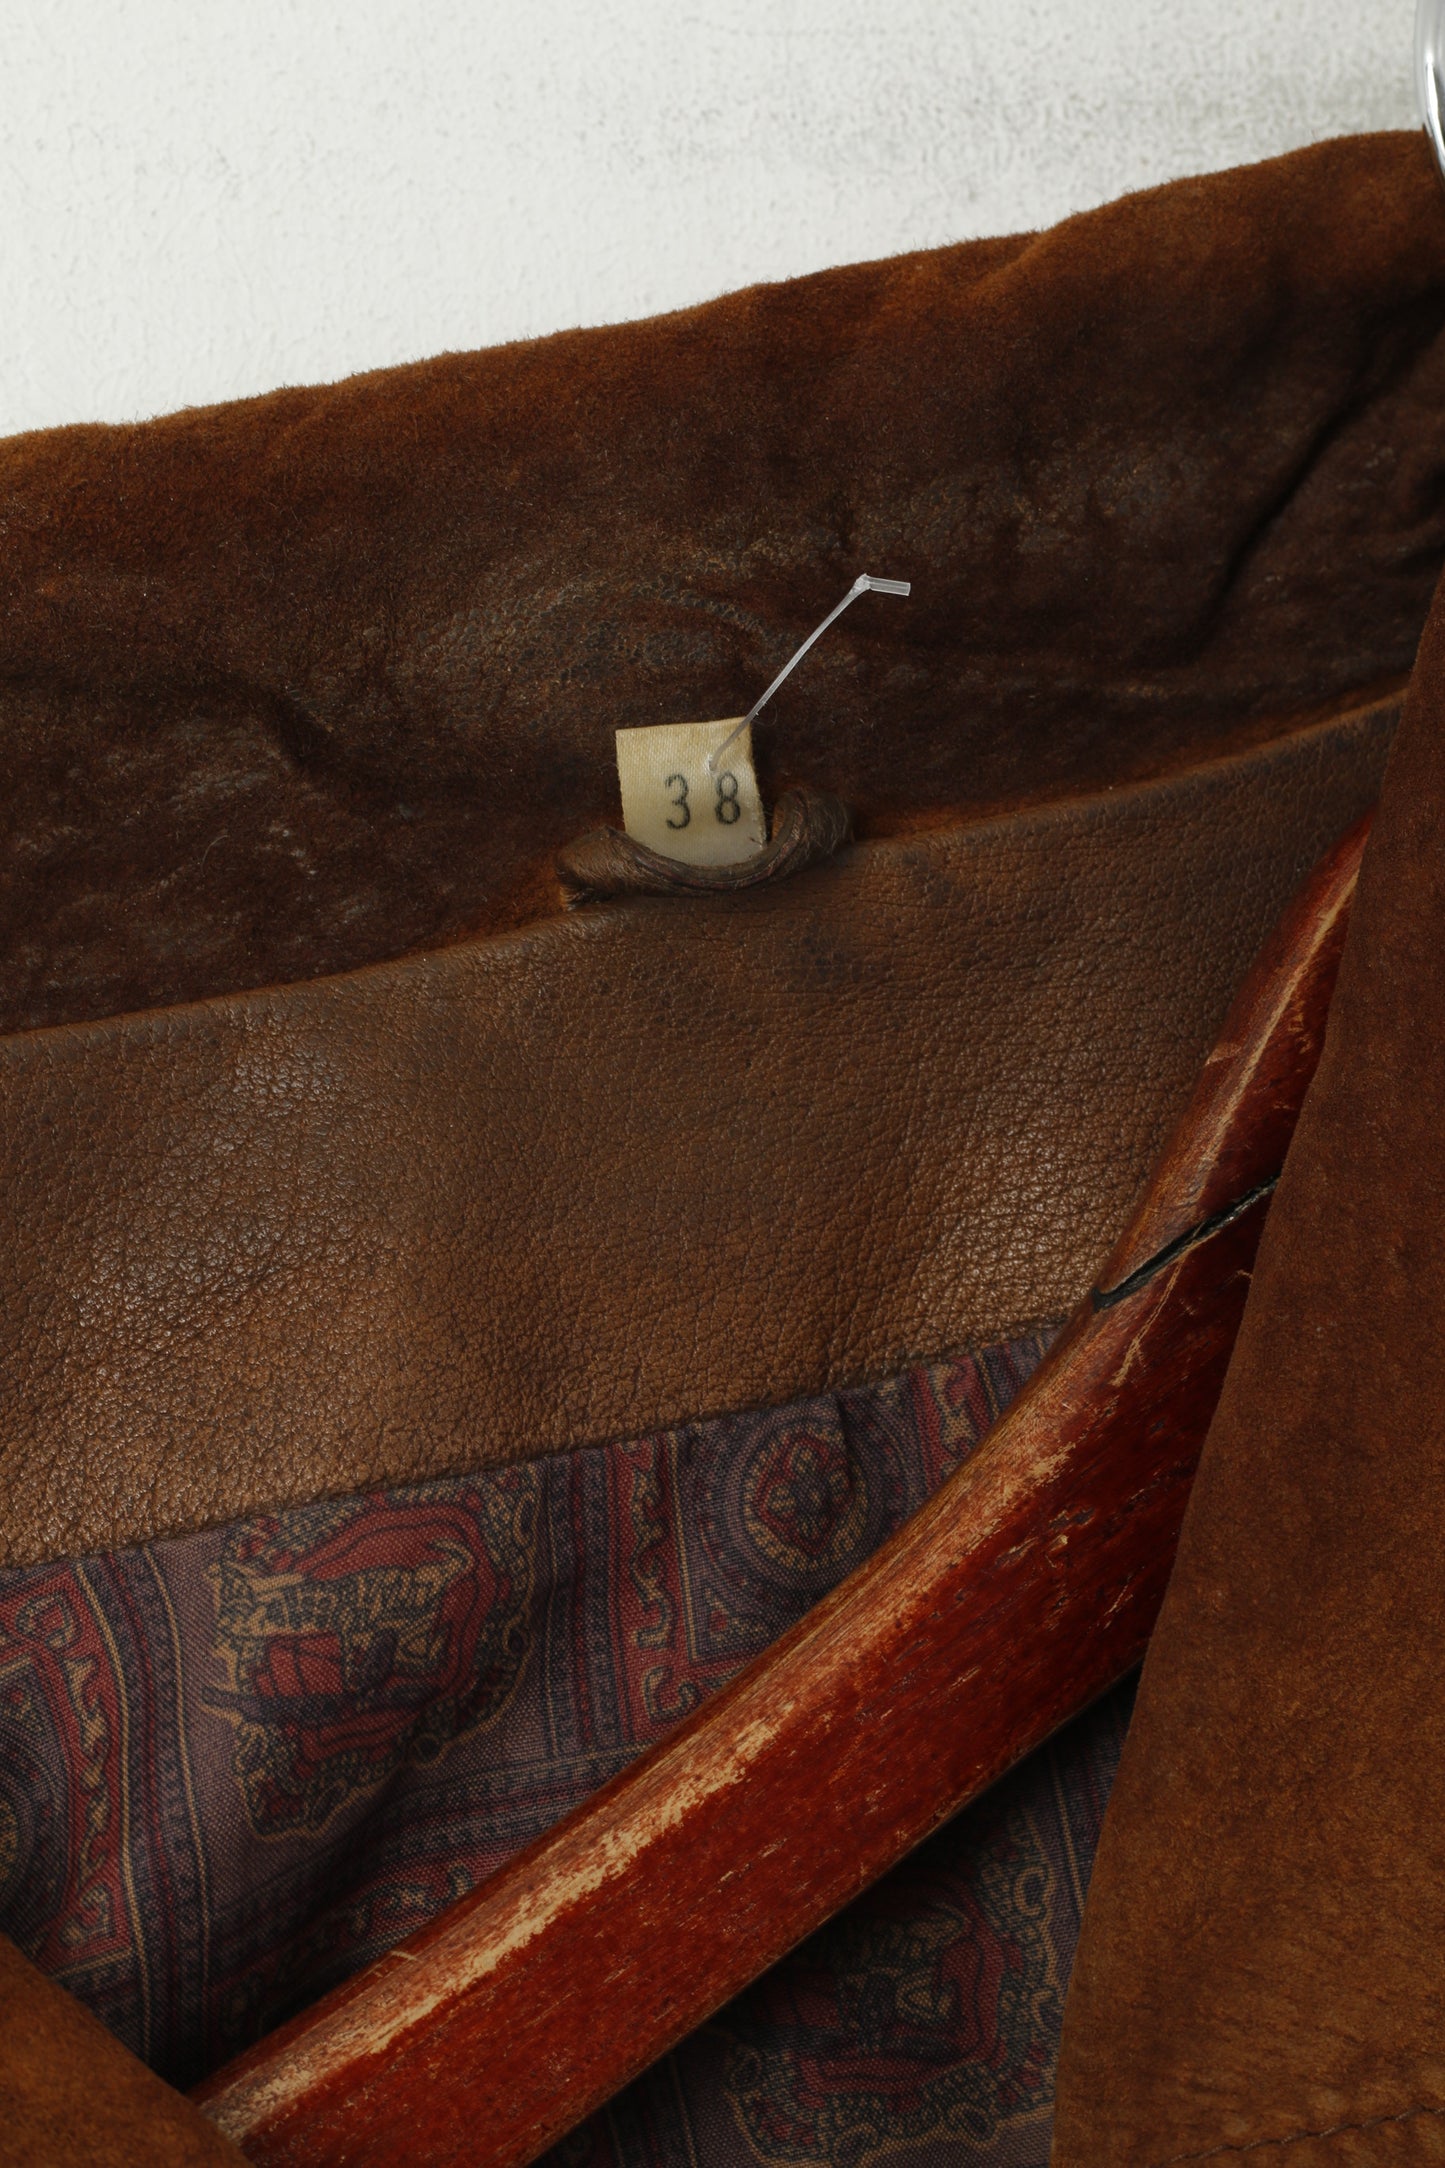 Aleksander Women 38 M Leather Jacket Brown Vintage Western Single Breasted Suede Top